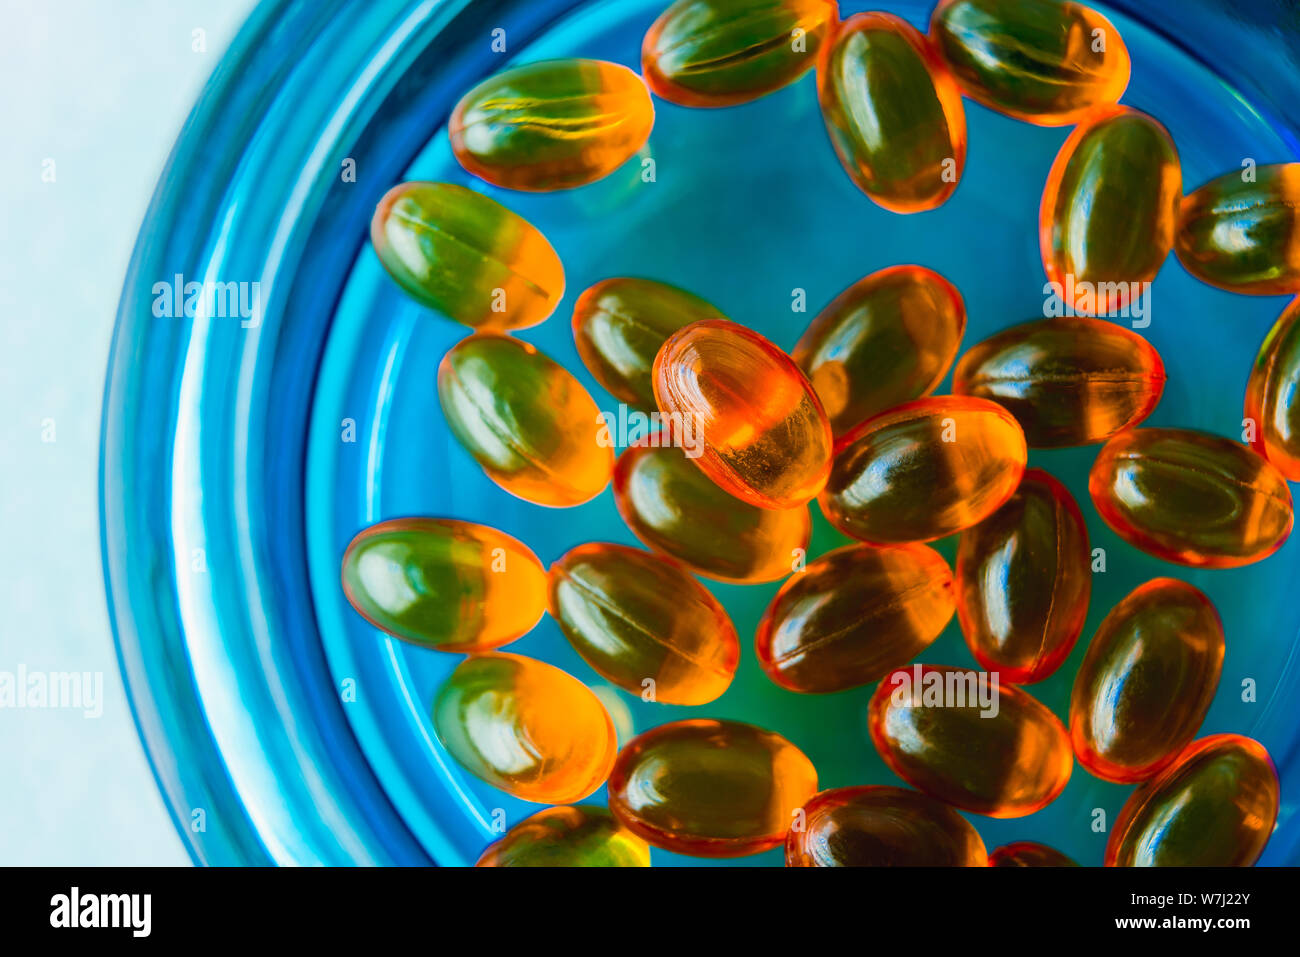 La vitamina D. Orange capsula di gelatina molle utilizzate nella produzione farmaceutica per contenere vitamine oleoso o supplemento nutrizionale Foto Stock